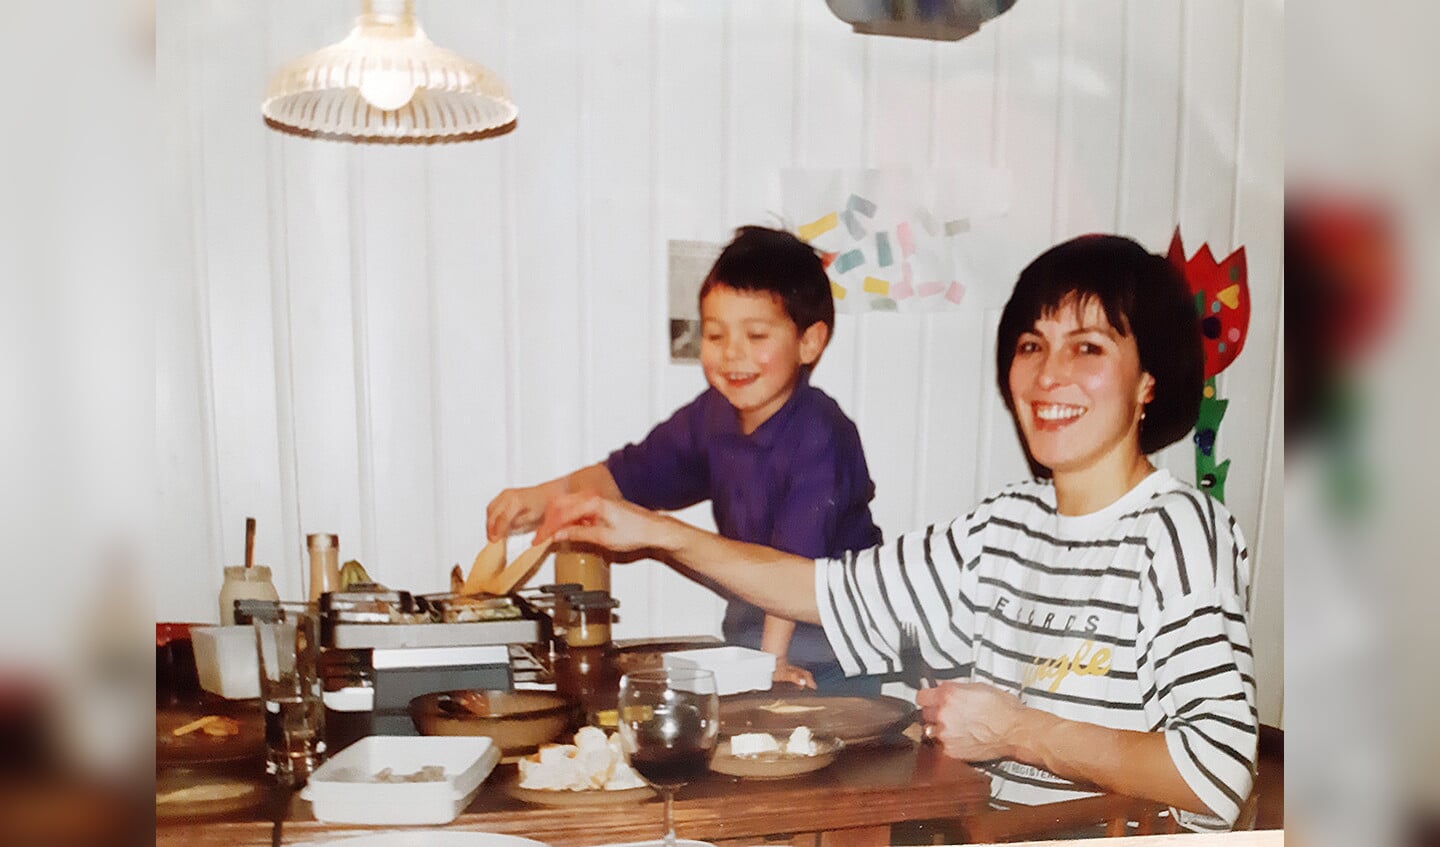 ‘Hier ben ik, een jaar of vijf oud, met mijn moeder aan het gourmetten, bij ons thuis in Uden.  Gourmetten vond ik als kind heel leuk, dat konden we wat mij betreft niet vaak genoeg doen